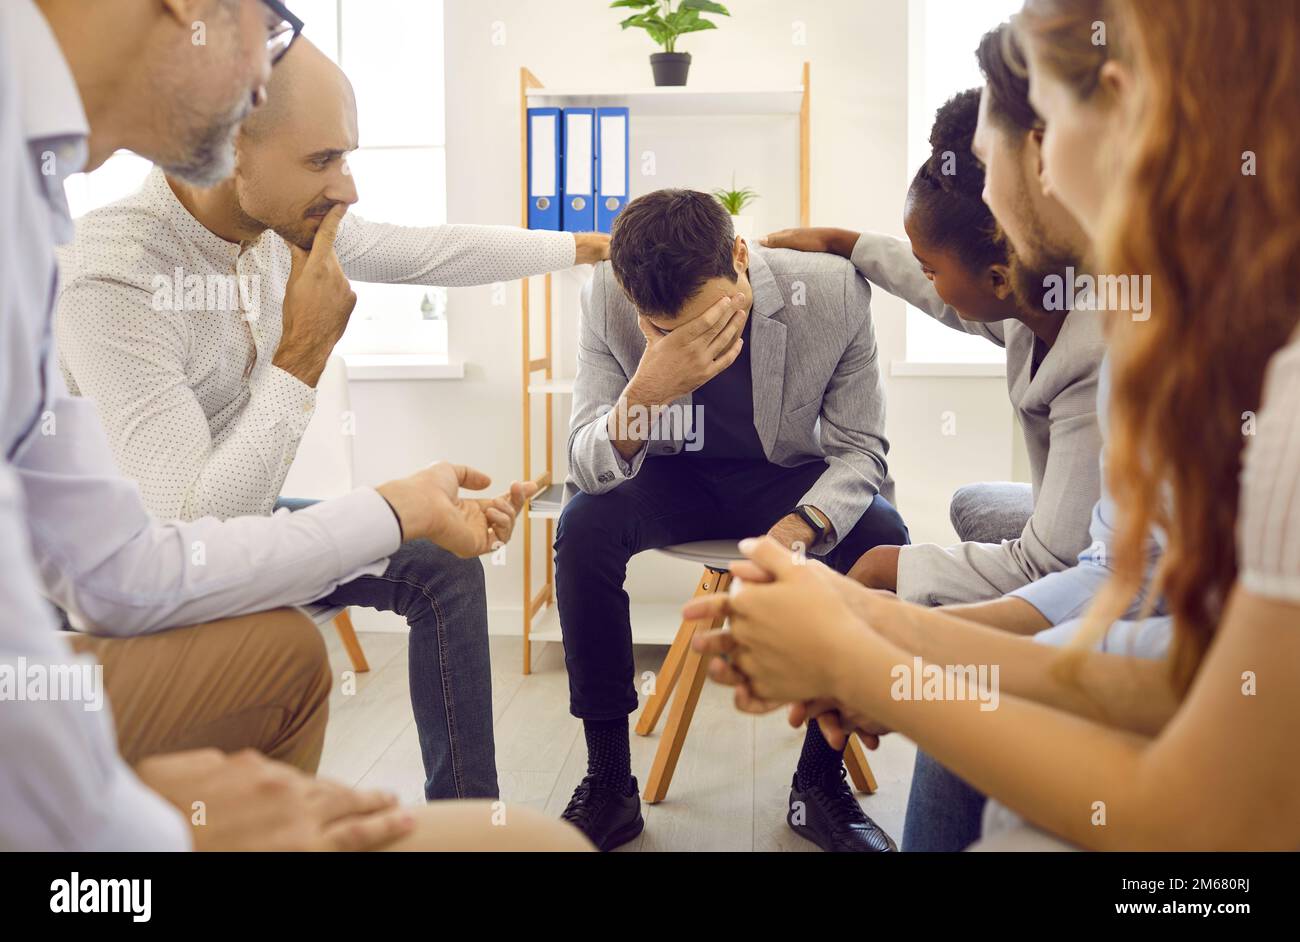 Uomo triste alla sessione di terapia di gruppo di sostegno seduta con la testa giù e i partecipanti toccano le spalle. Foto Stock